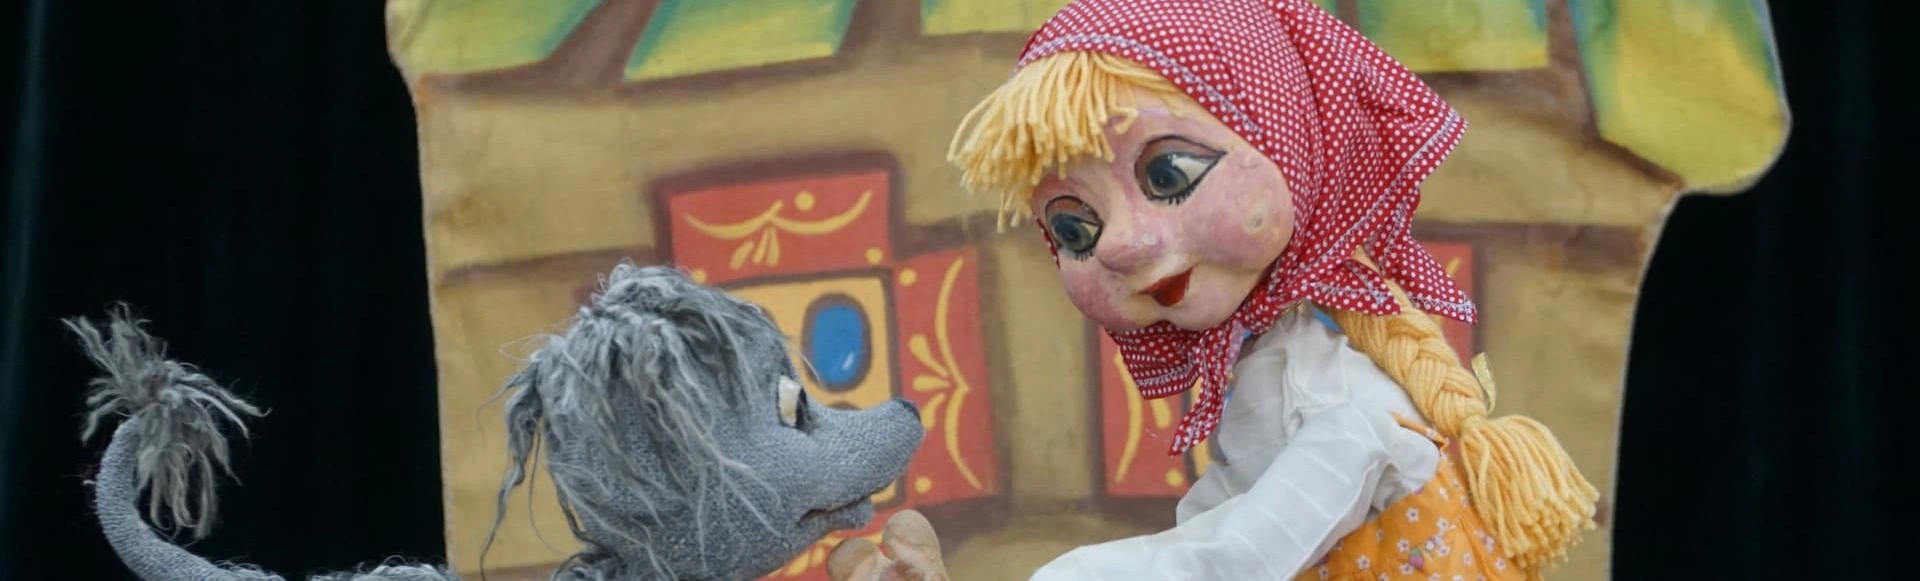 В ДК Железнодорожников состоится кукольный спектакль «Машенька и Медведь»